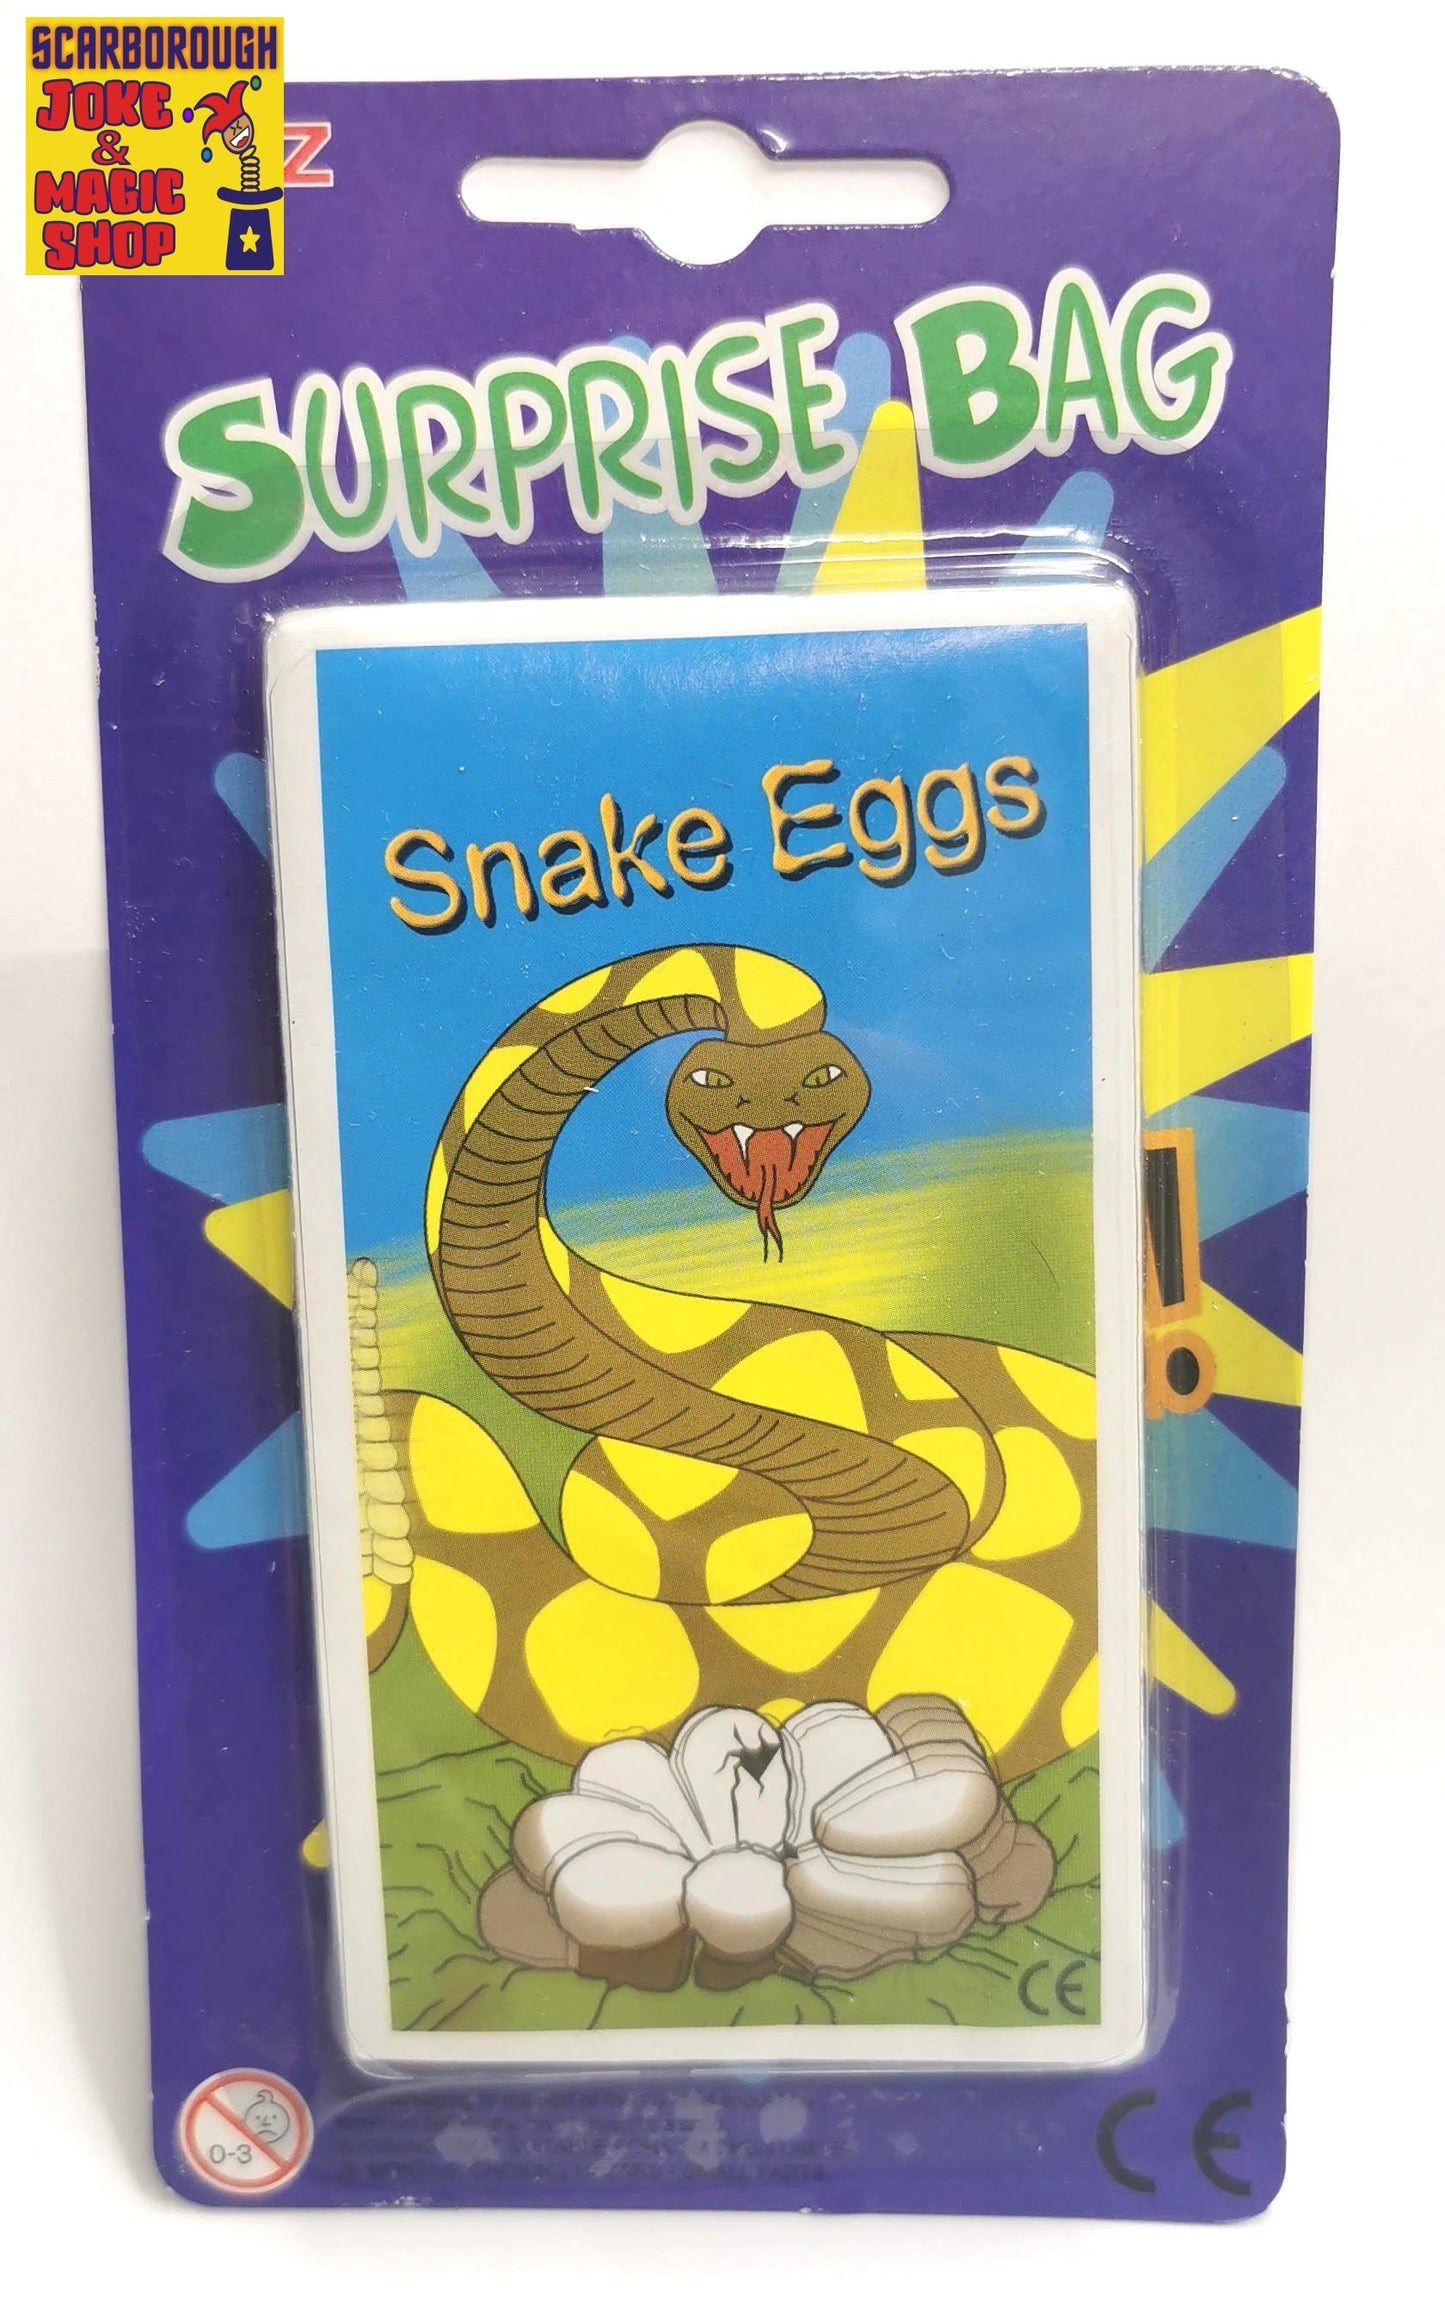 Rattlesnake Eggs Surprise